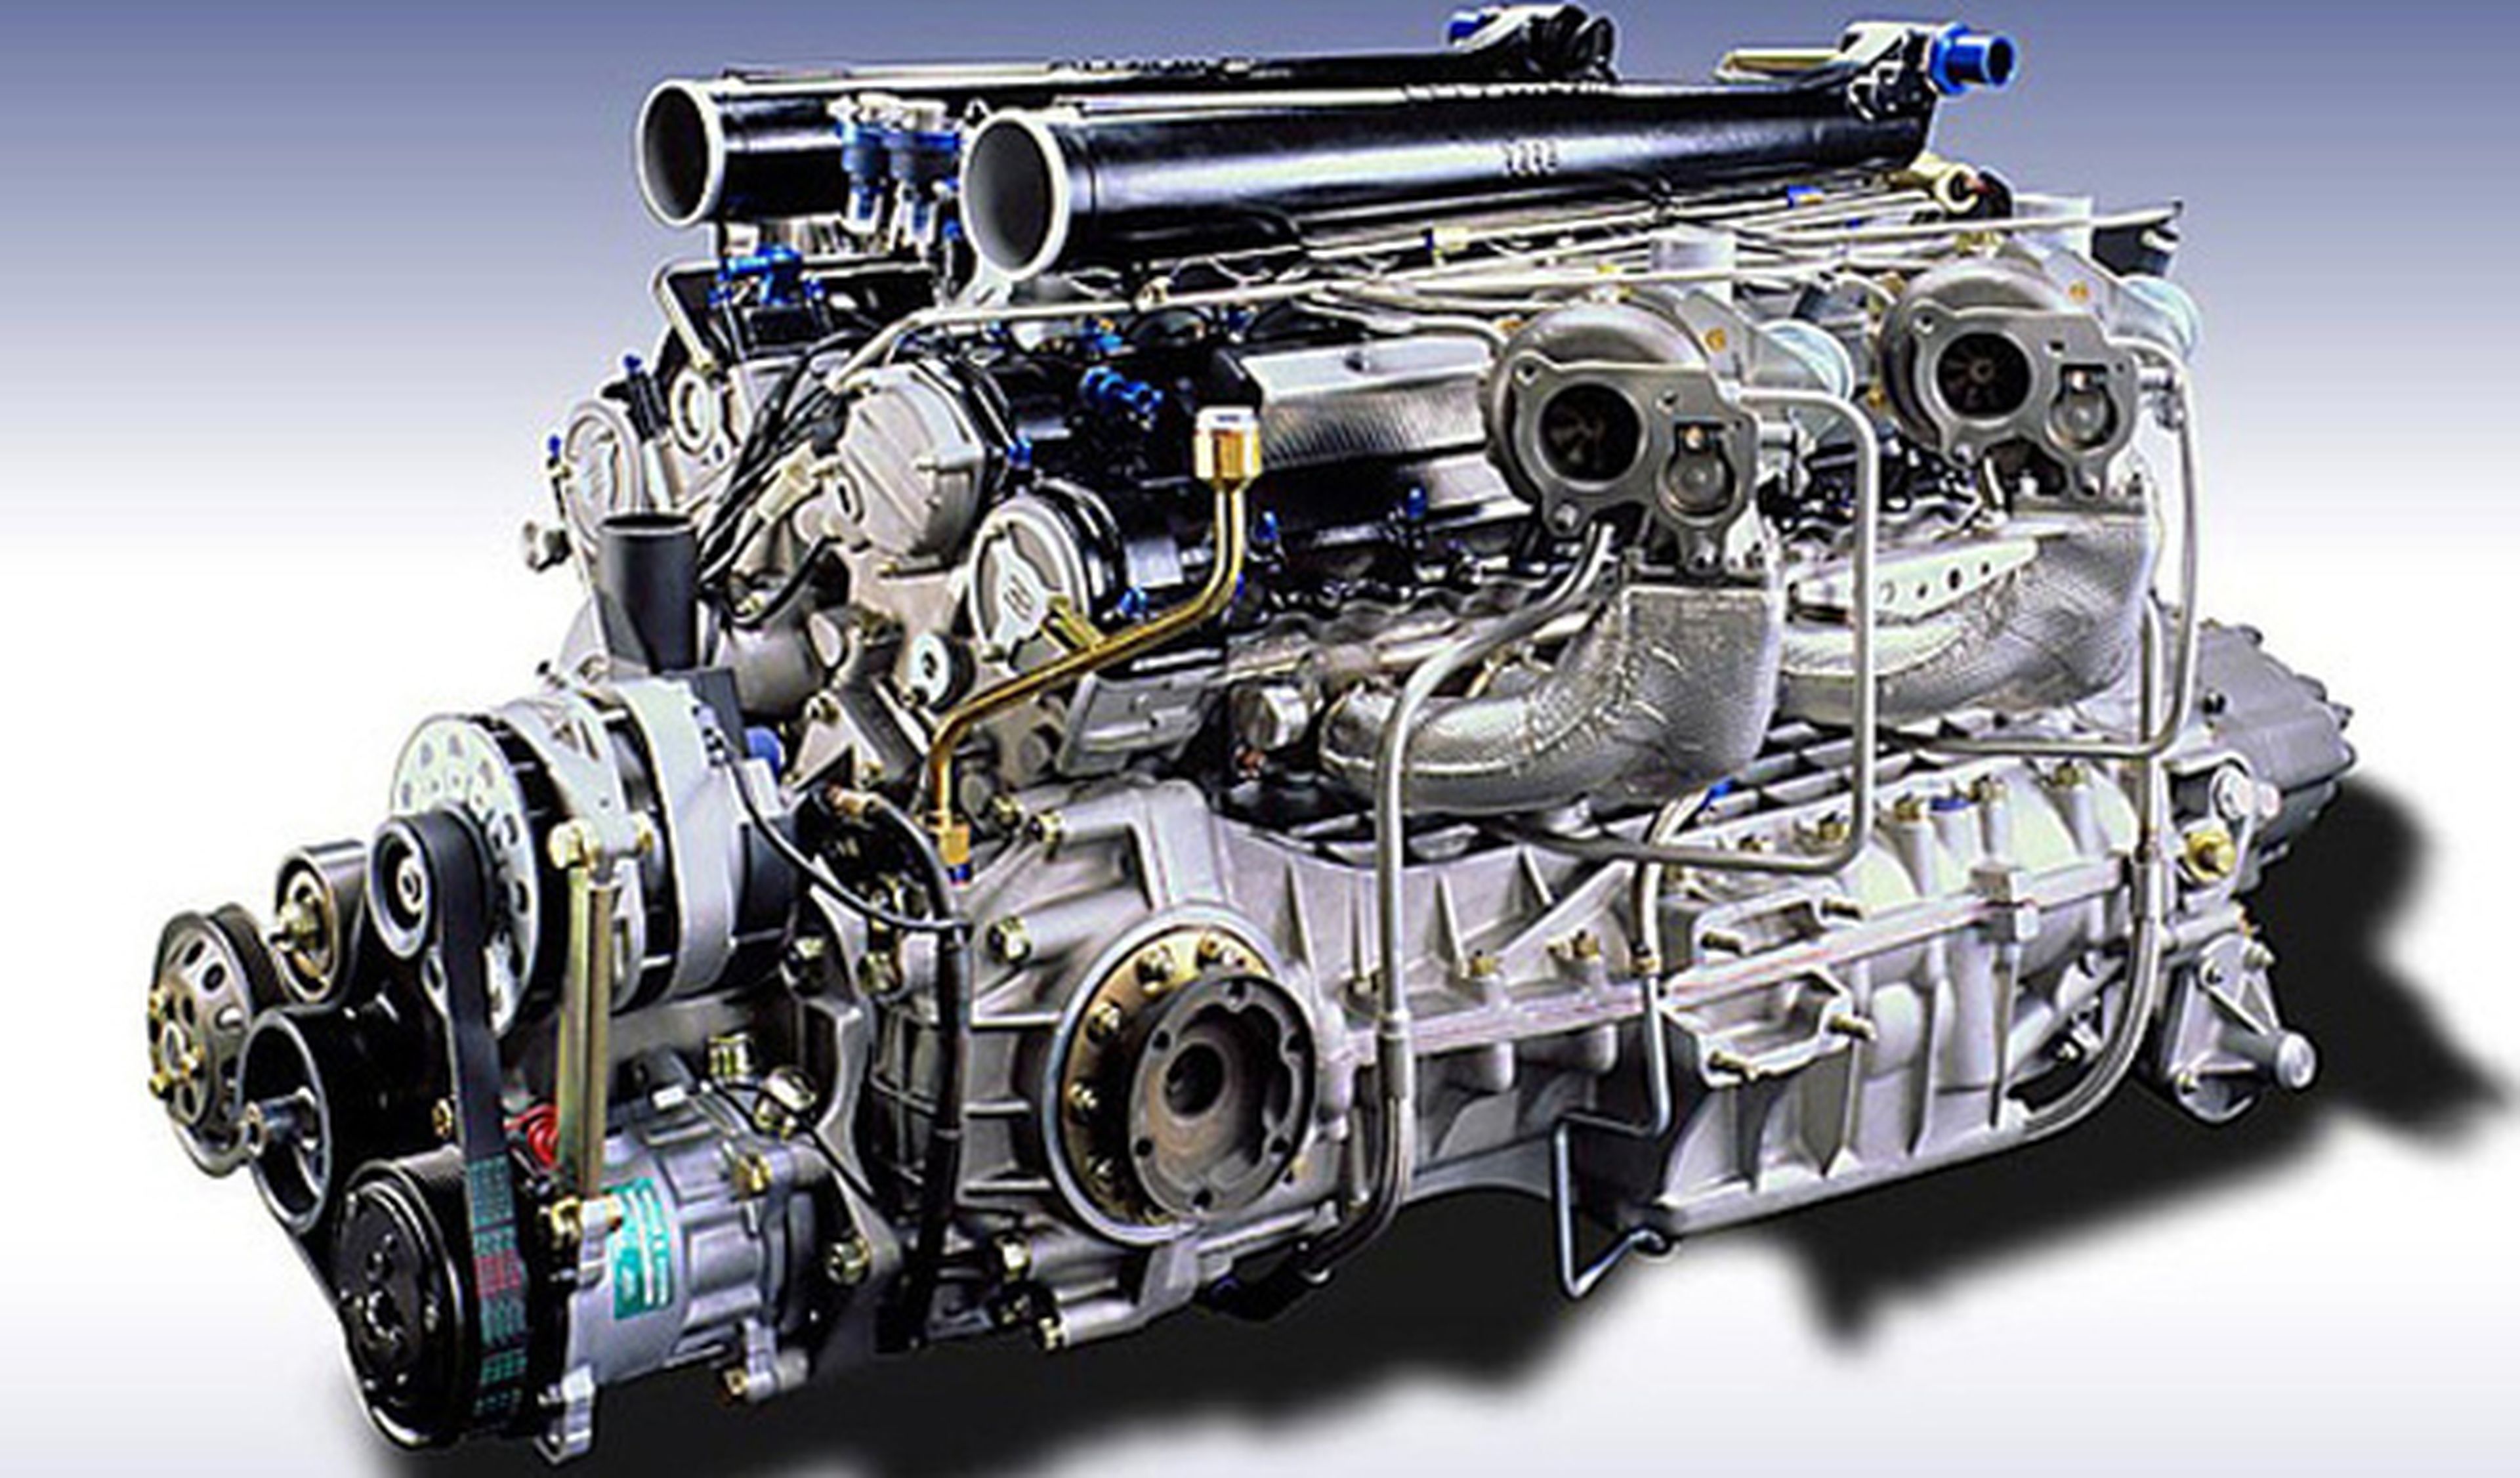 ¿A qué coche le pondrías este motor V12 con cuatro turbos?